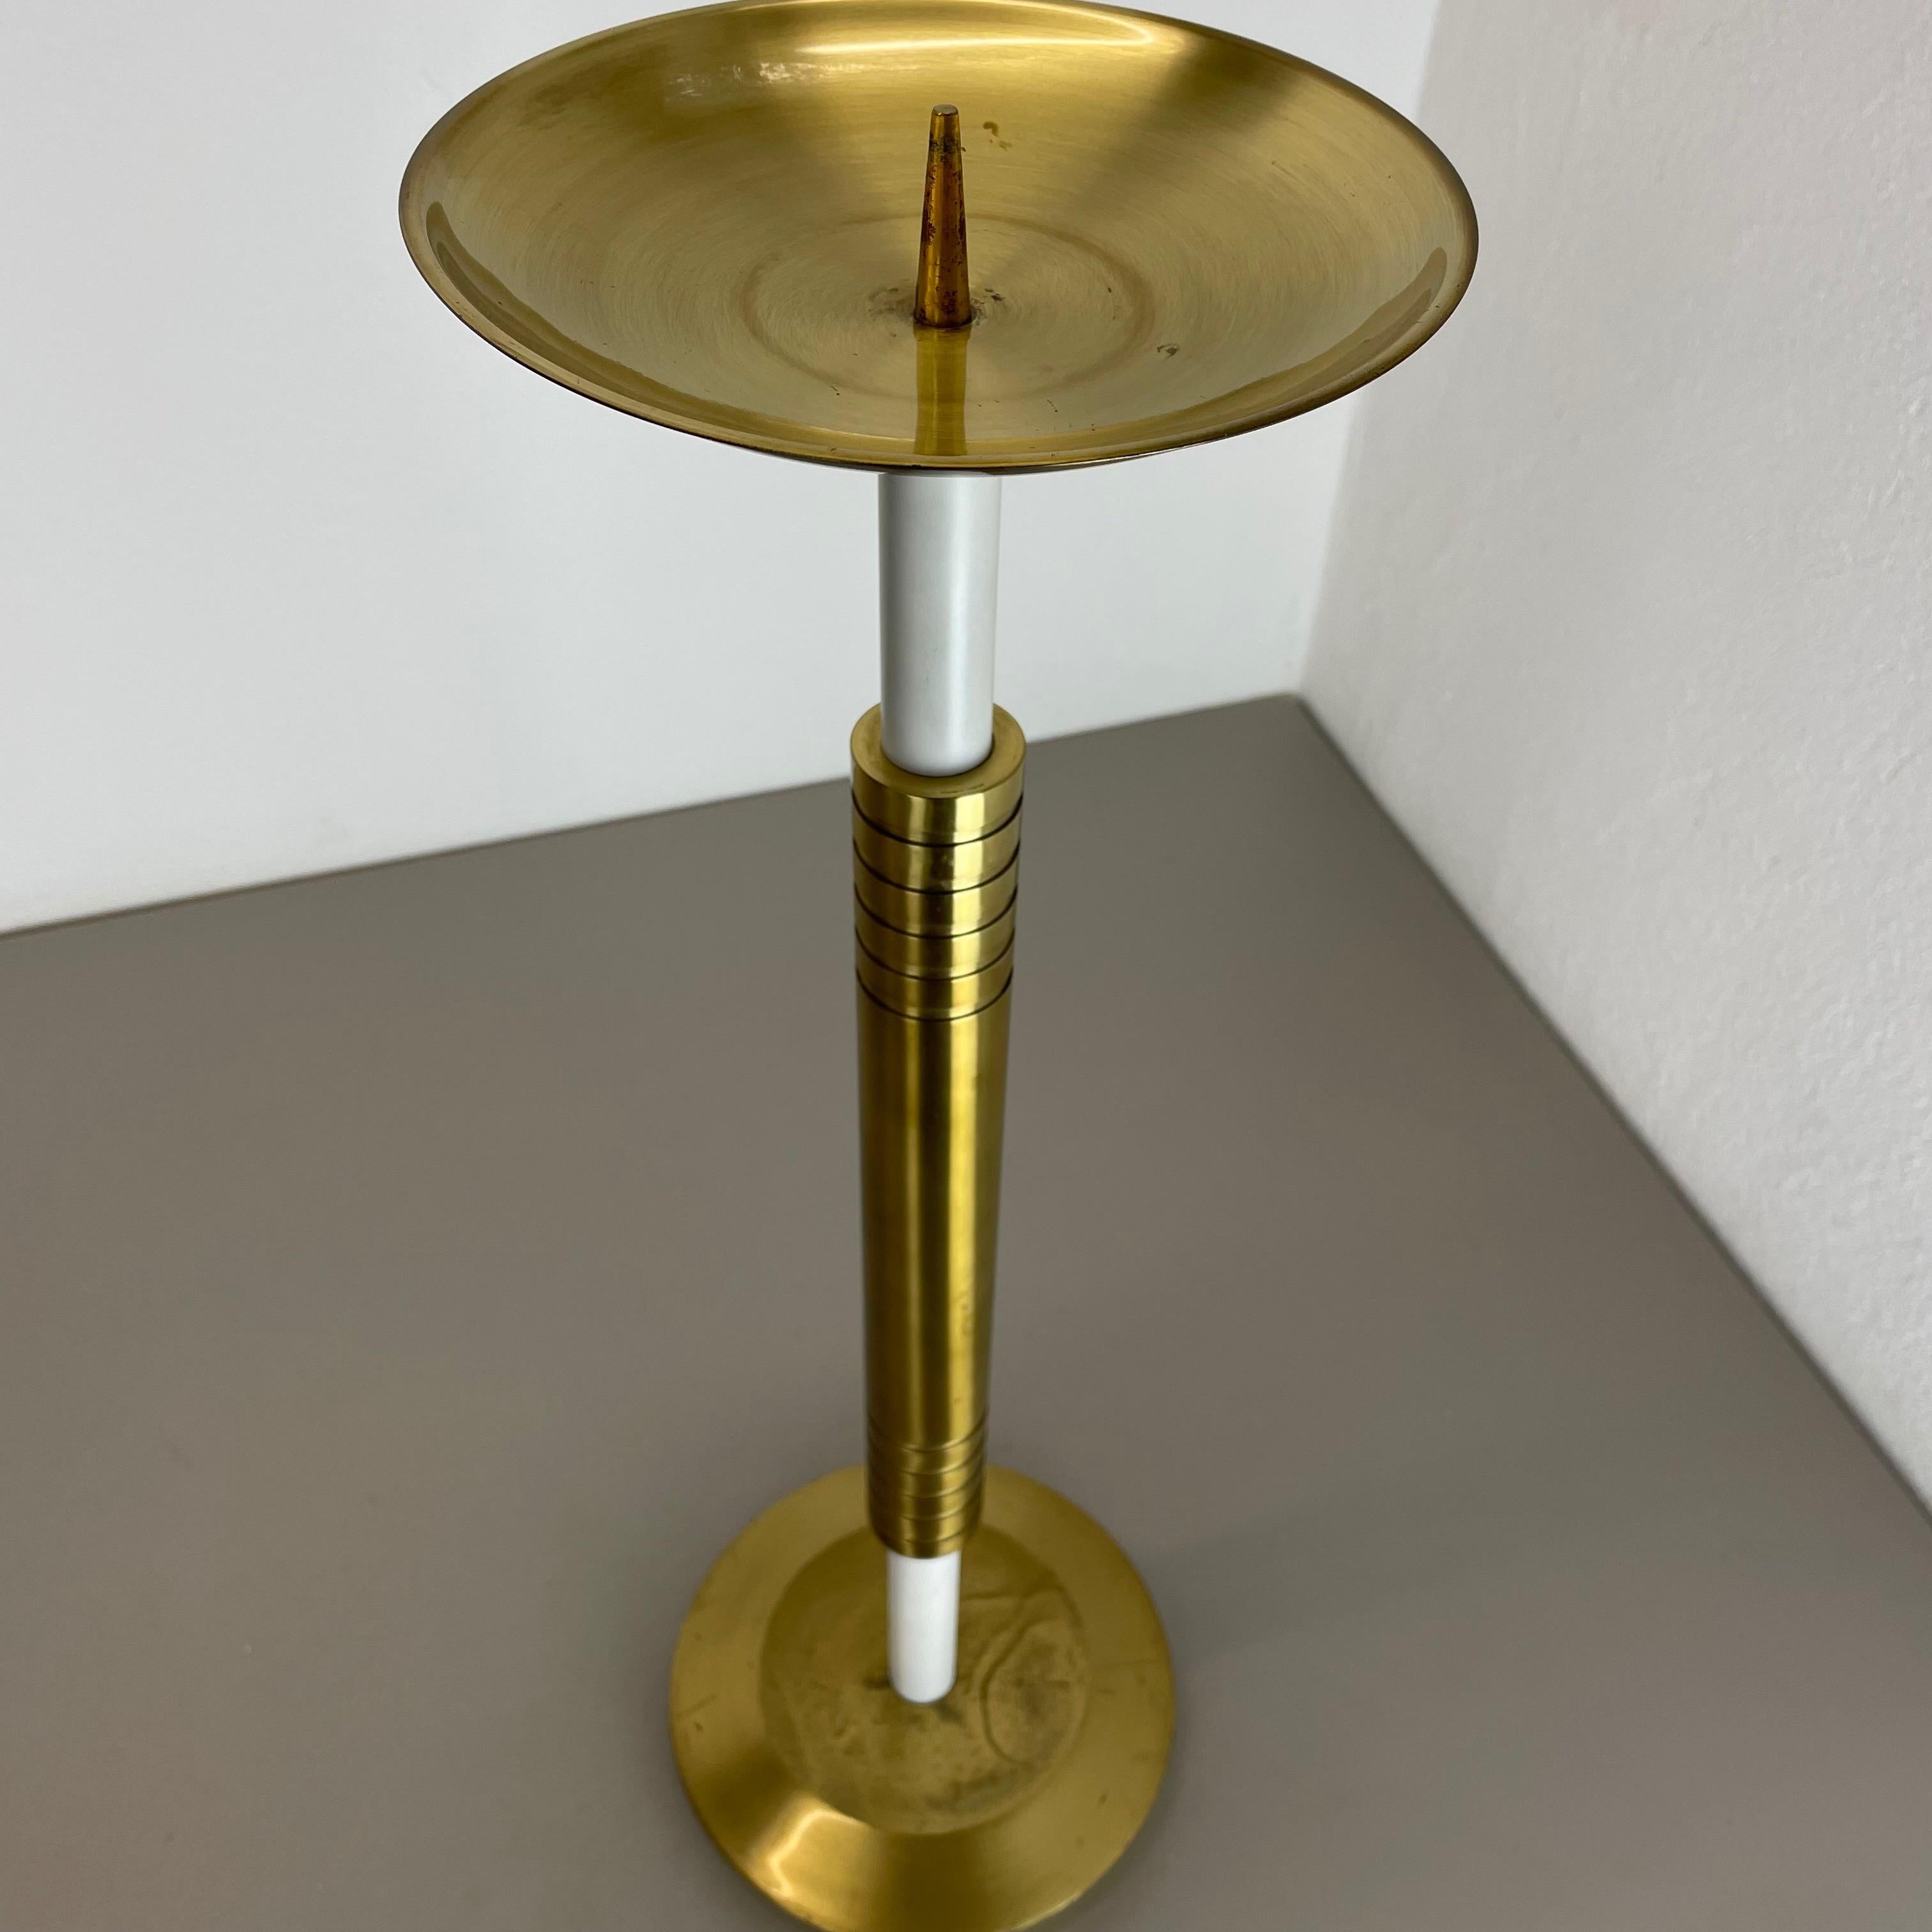 XL 3, 8kg Modernist Sculptural Brutalist Brass Floor Candleholder, Italy, 1950s For Sale 8